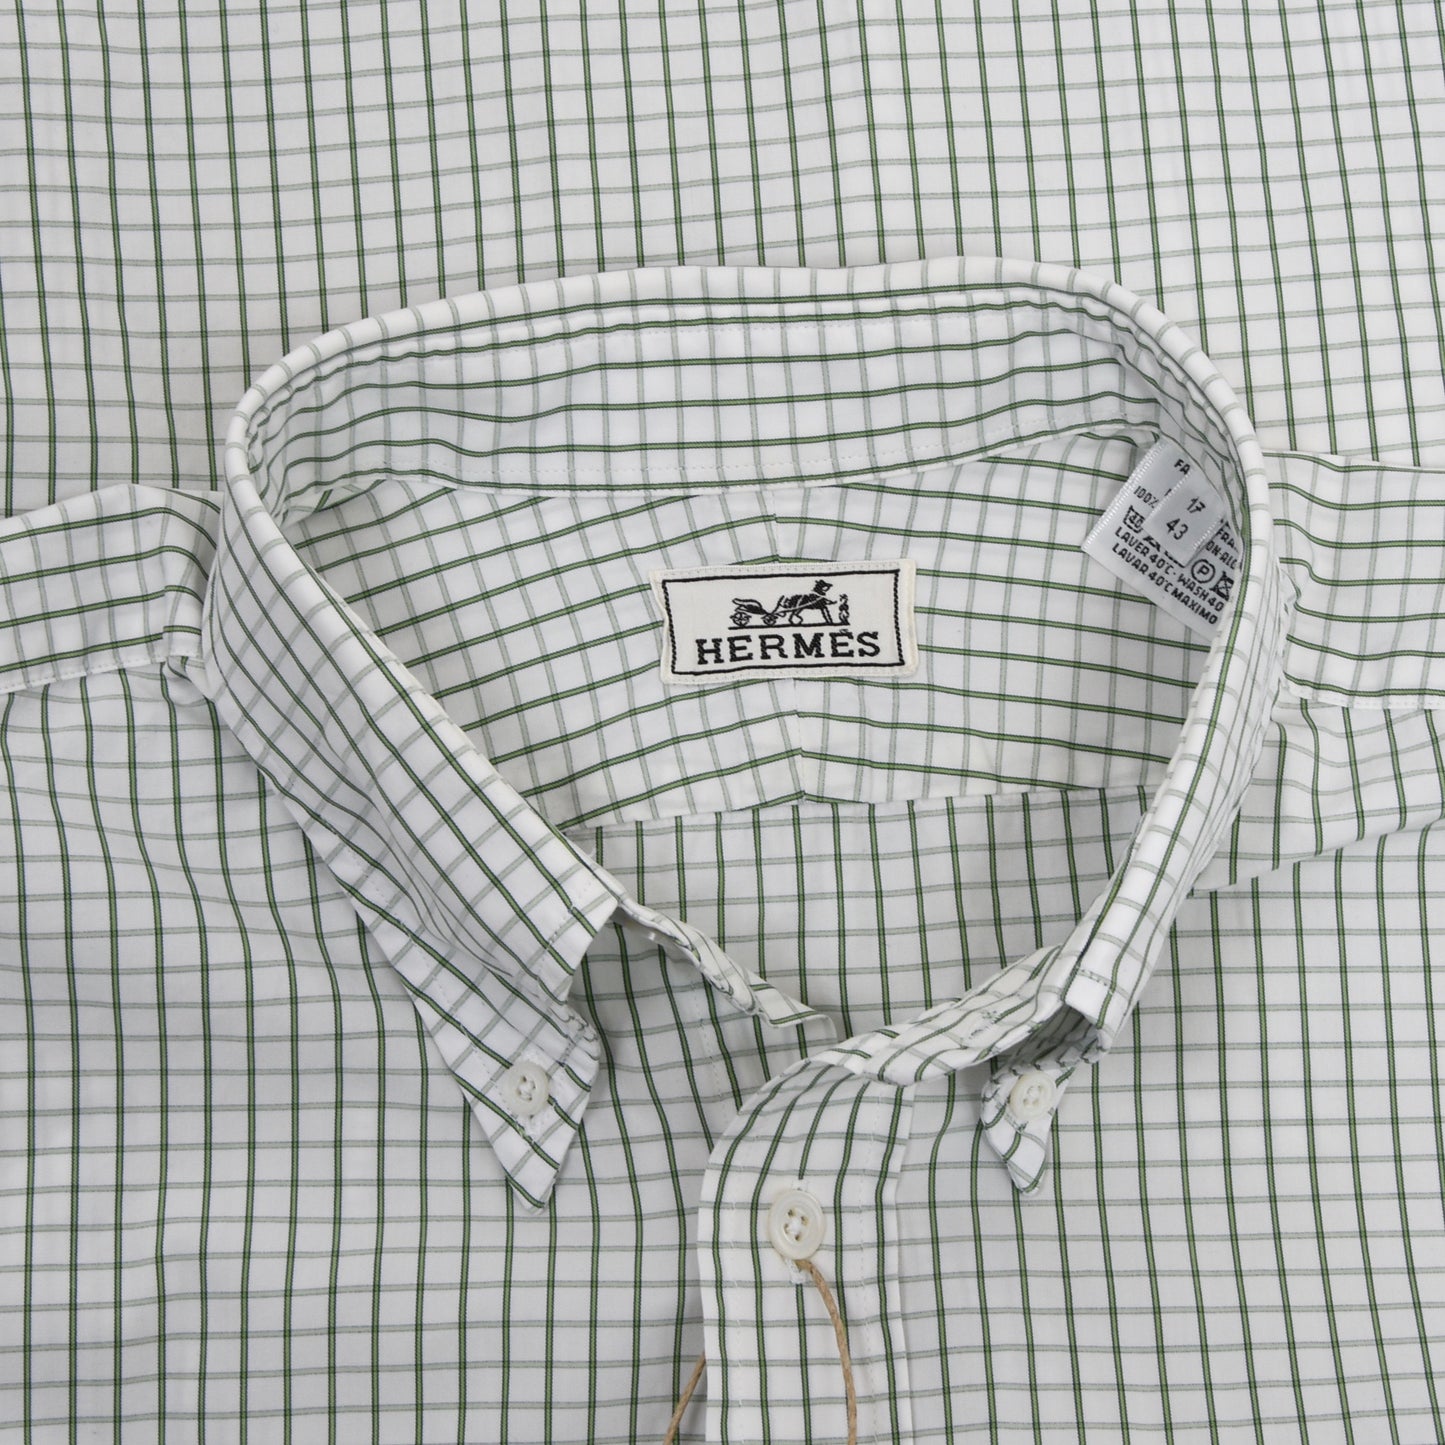 Hermès Paris Dress Shirt Size 43/17 - Green/White Check